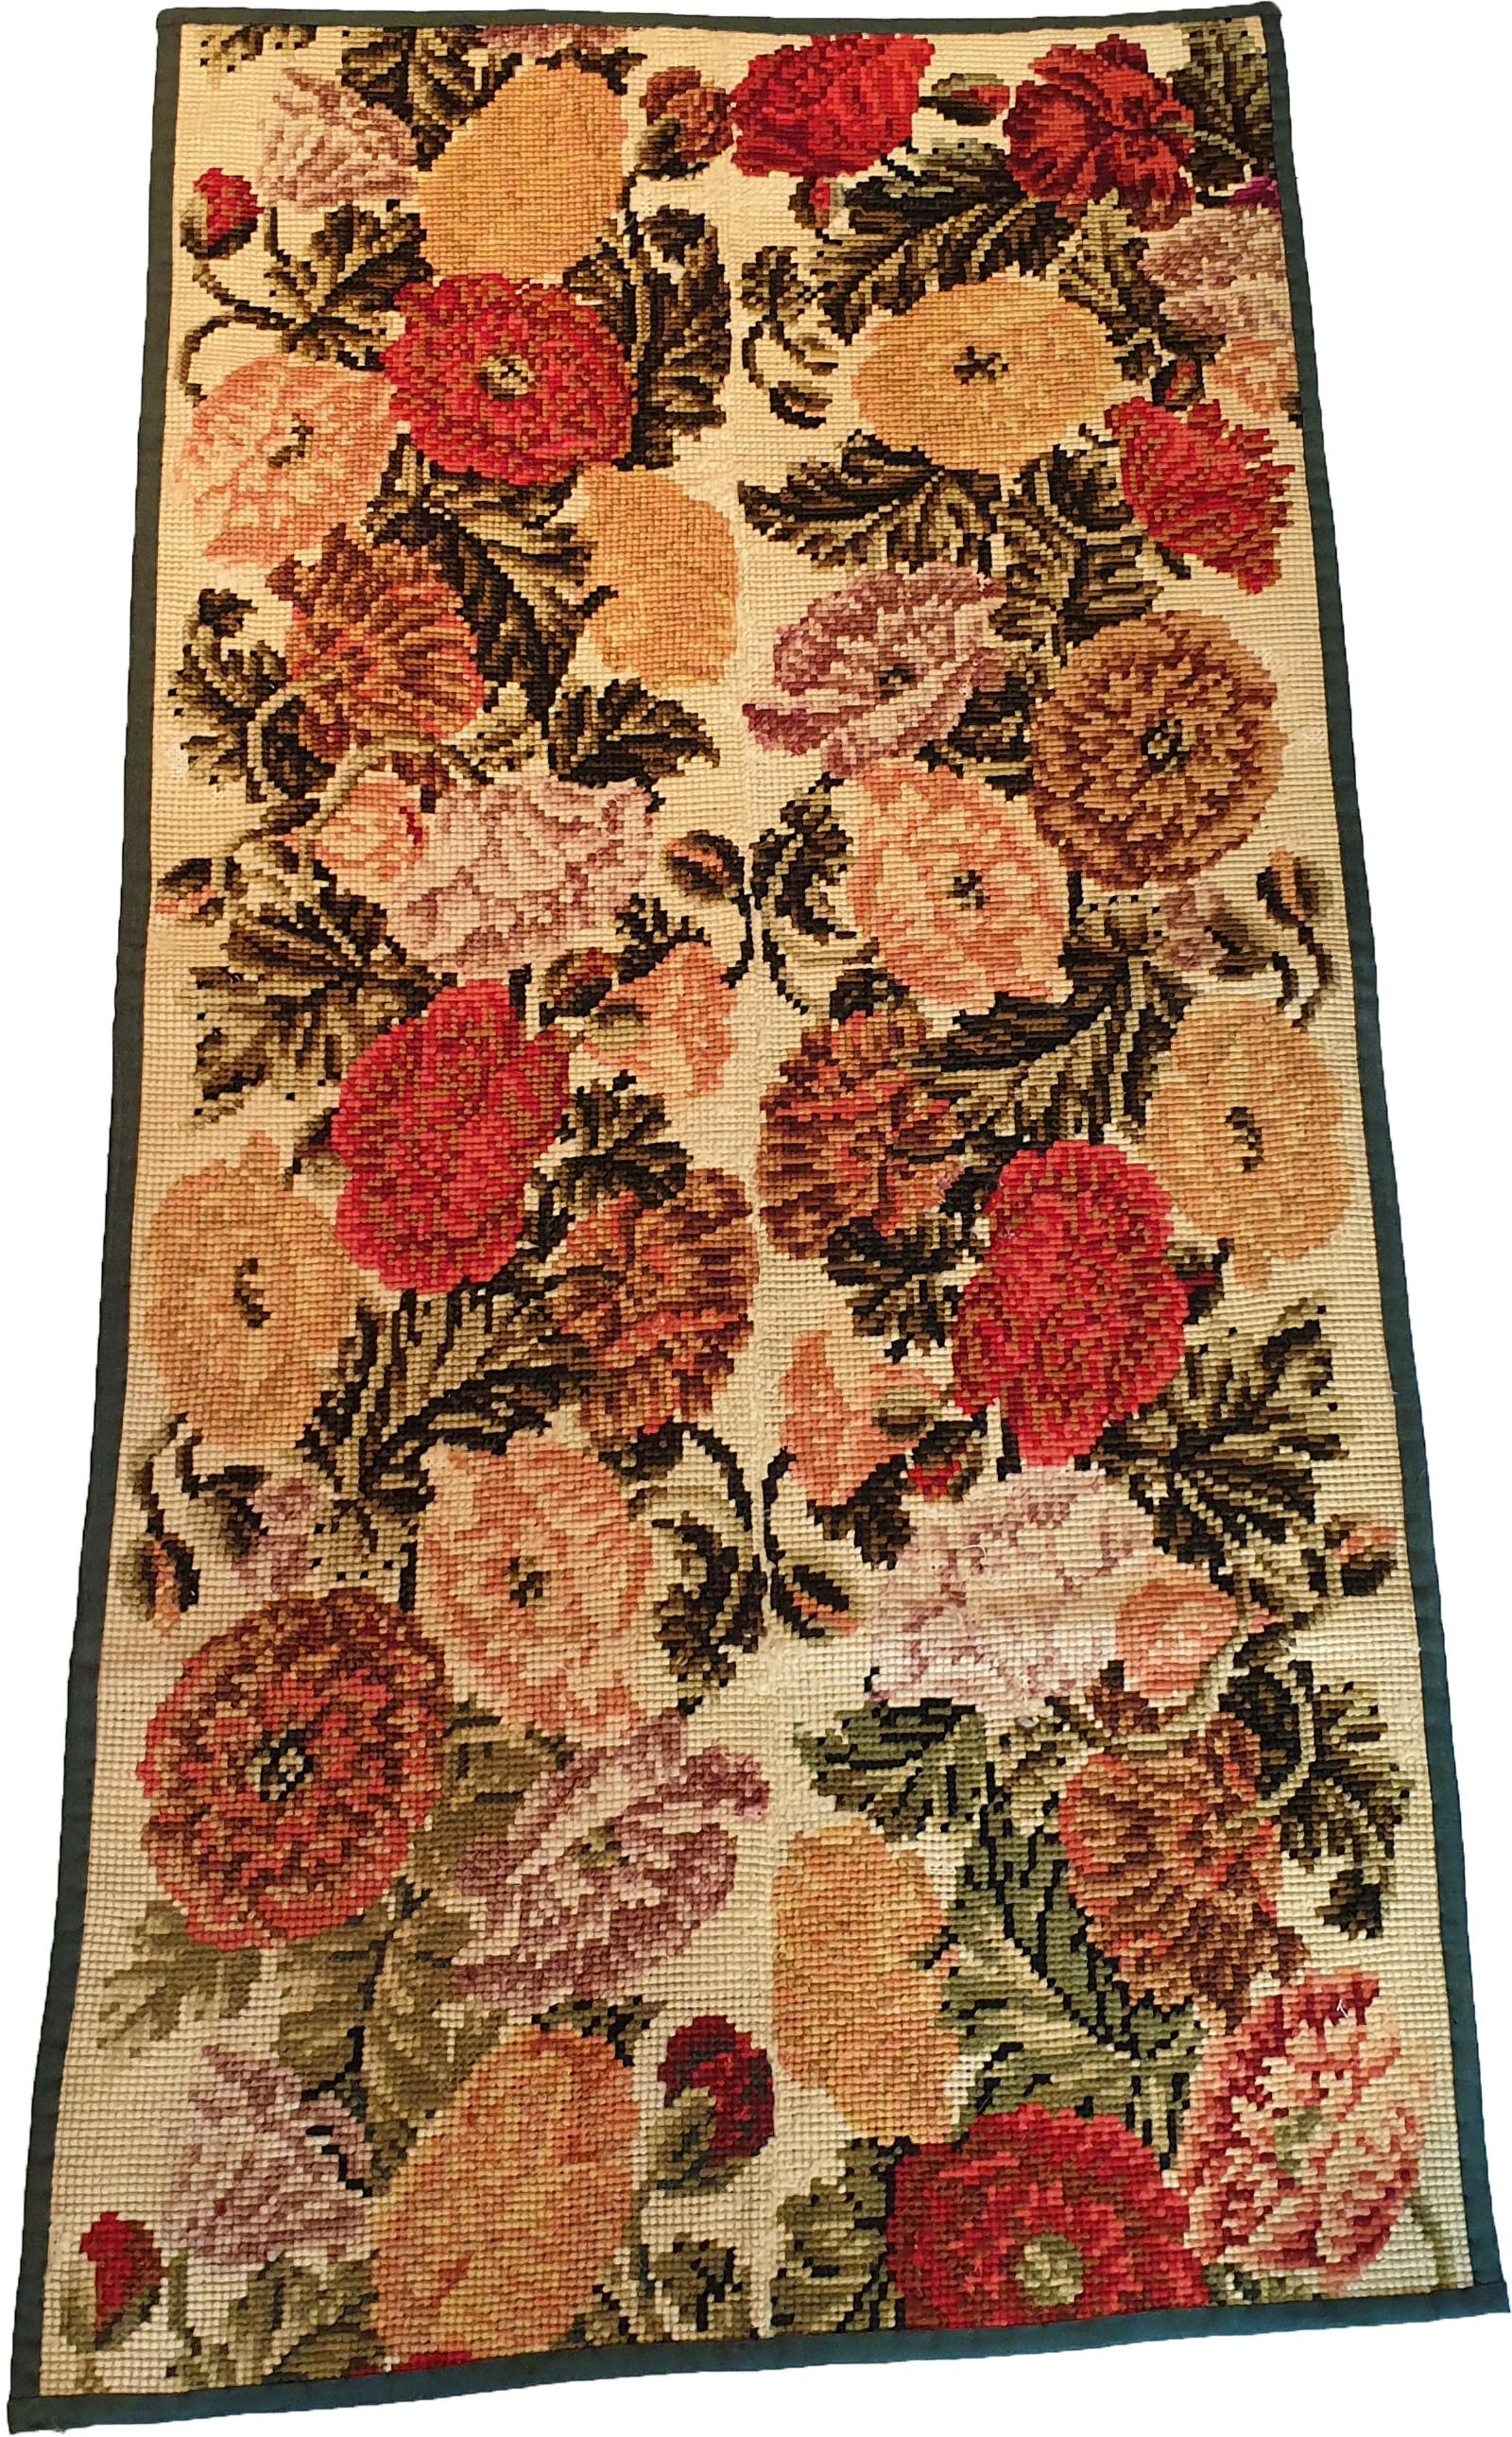 Textil der königlichen Manufaktur von Aubusson aus dem 19.
Darstellung von einigen Blumen.
Perfekter Erhaltungszustand.
Verstärkung durch einen Stoff auf der Rückseite des Werks

Abmessungen: 135 cm x 70 cm.
 